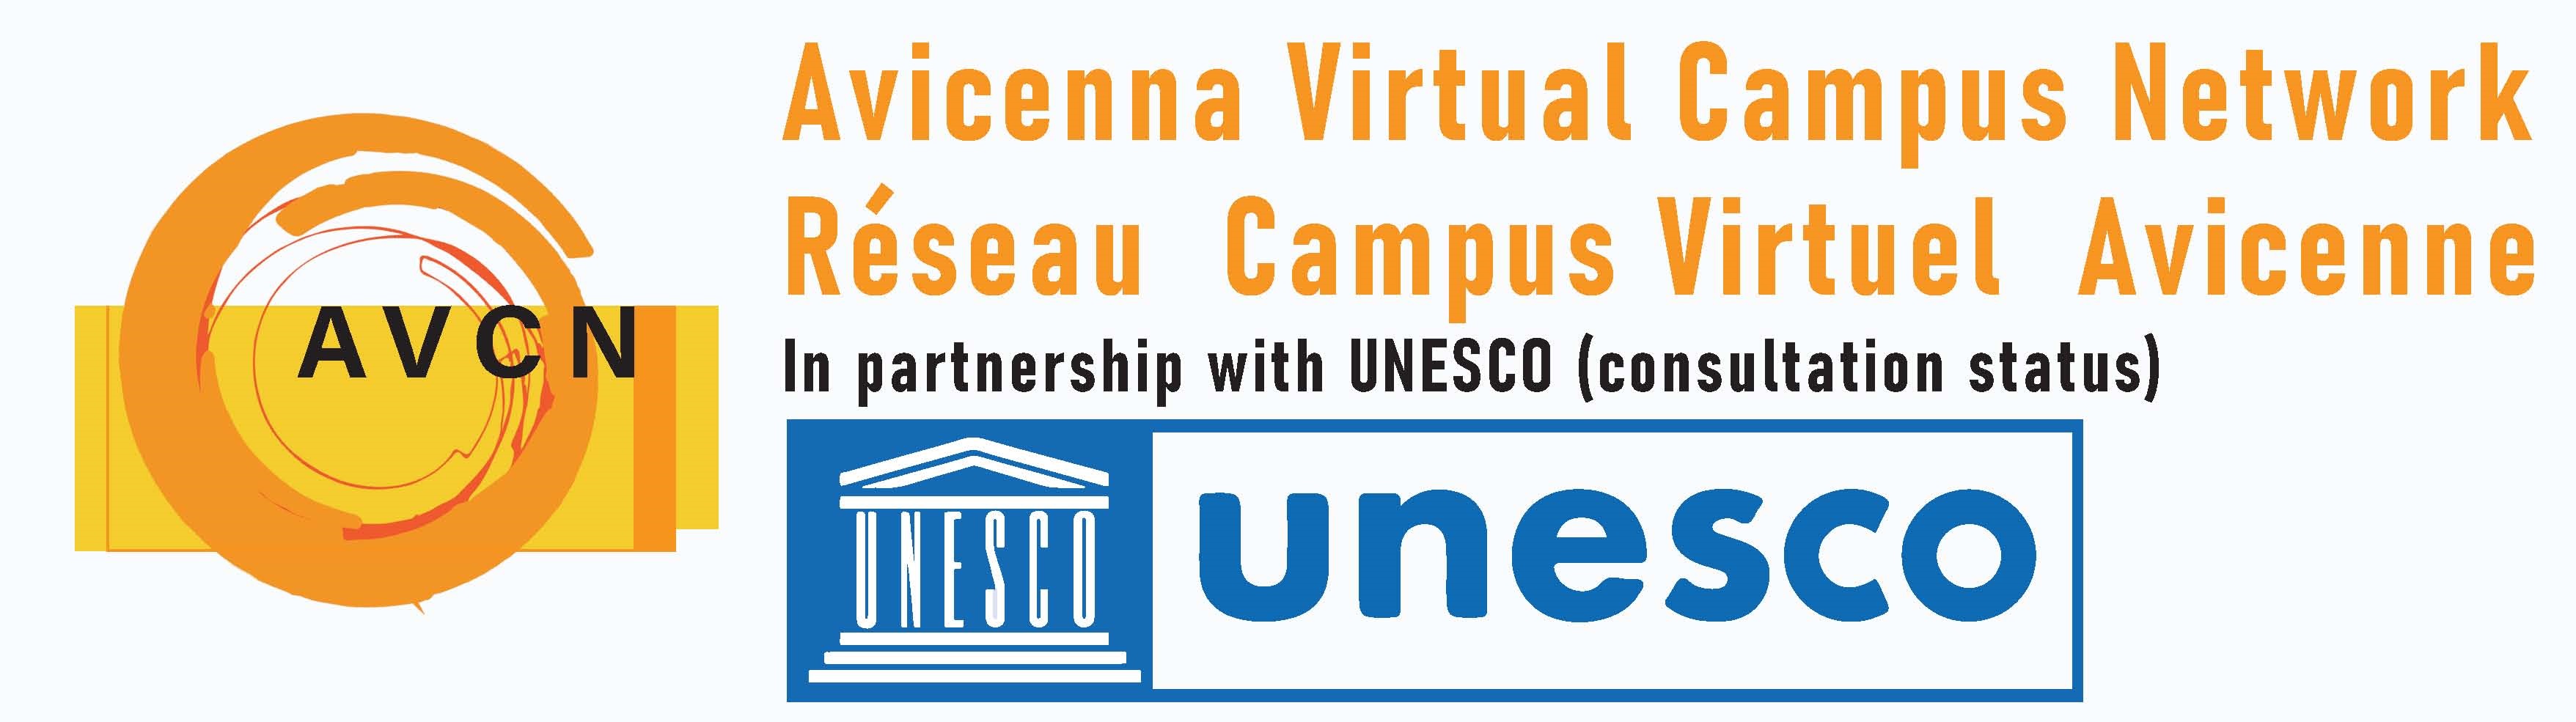  RCVA UNESCO   